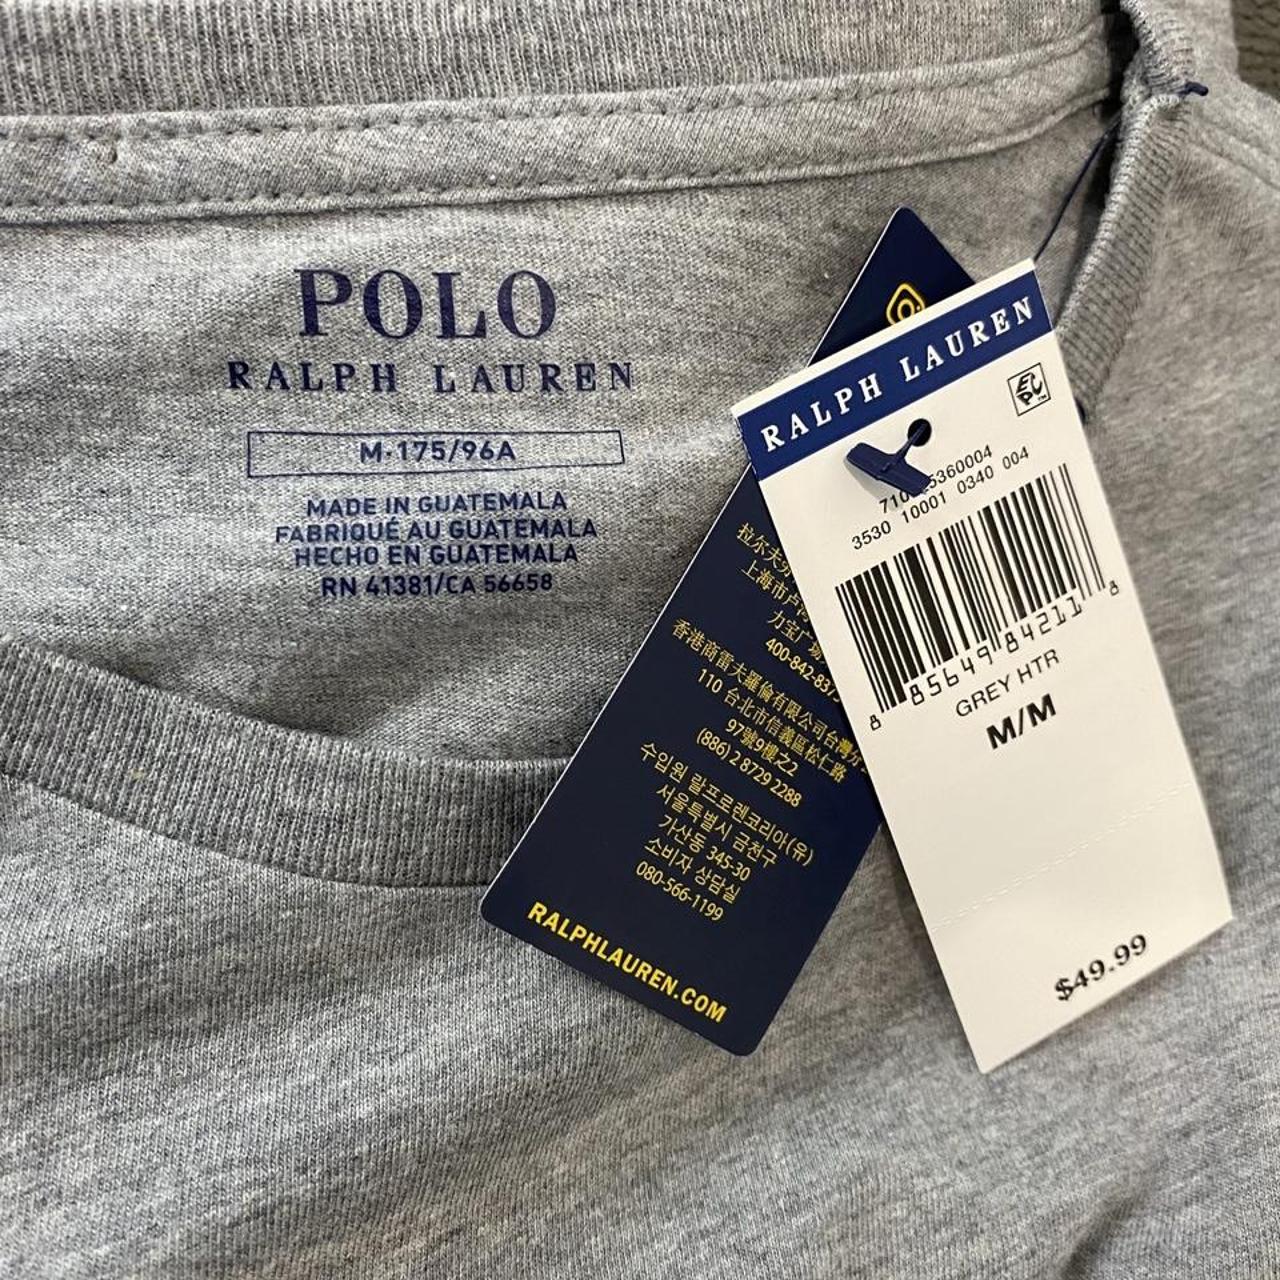 Polo Ralph Lauren Mens T Shirt Gray Heather Grey... - Depop